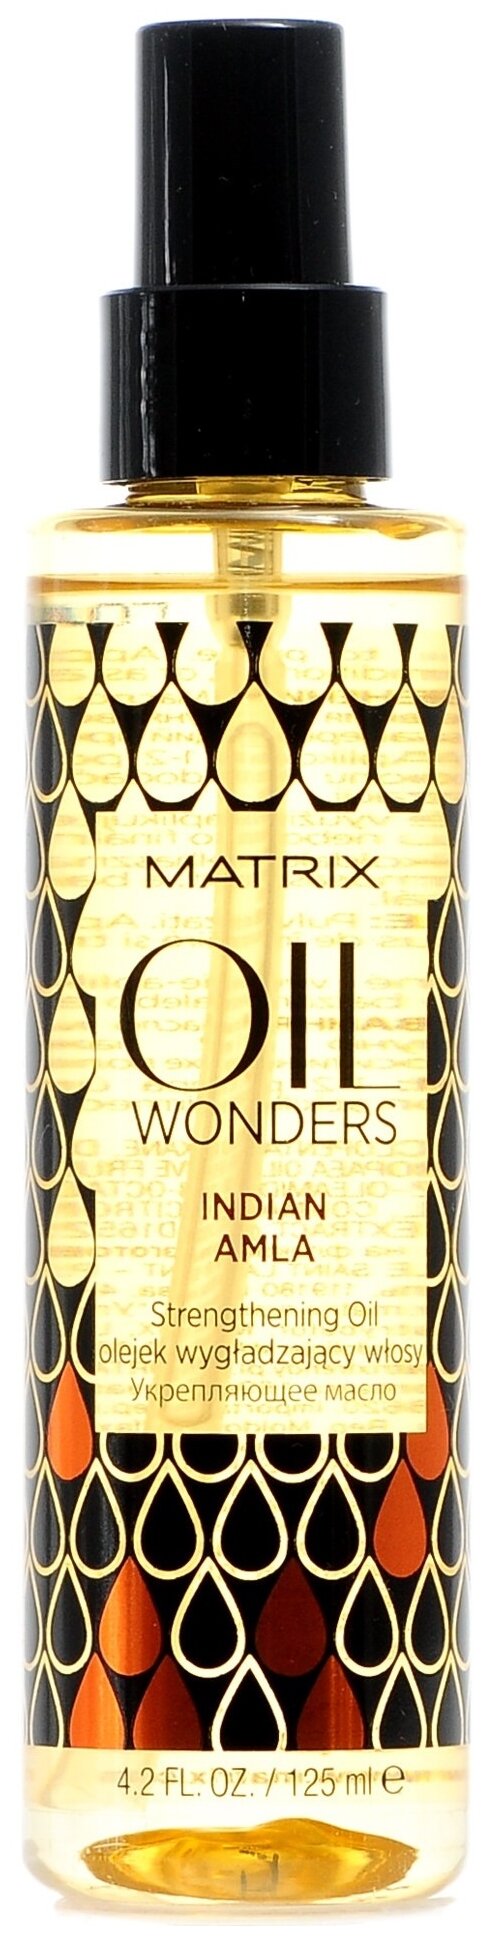 Matrix Oil Wonders Укрепляющее масло для волос Индийская Амла, 125 мл, спрей